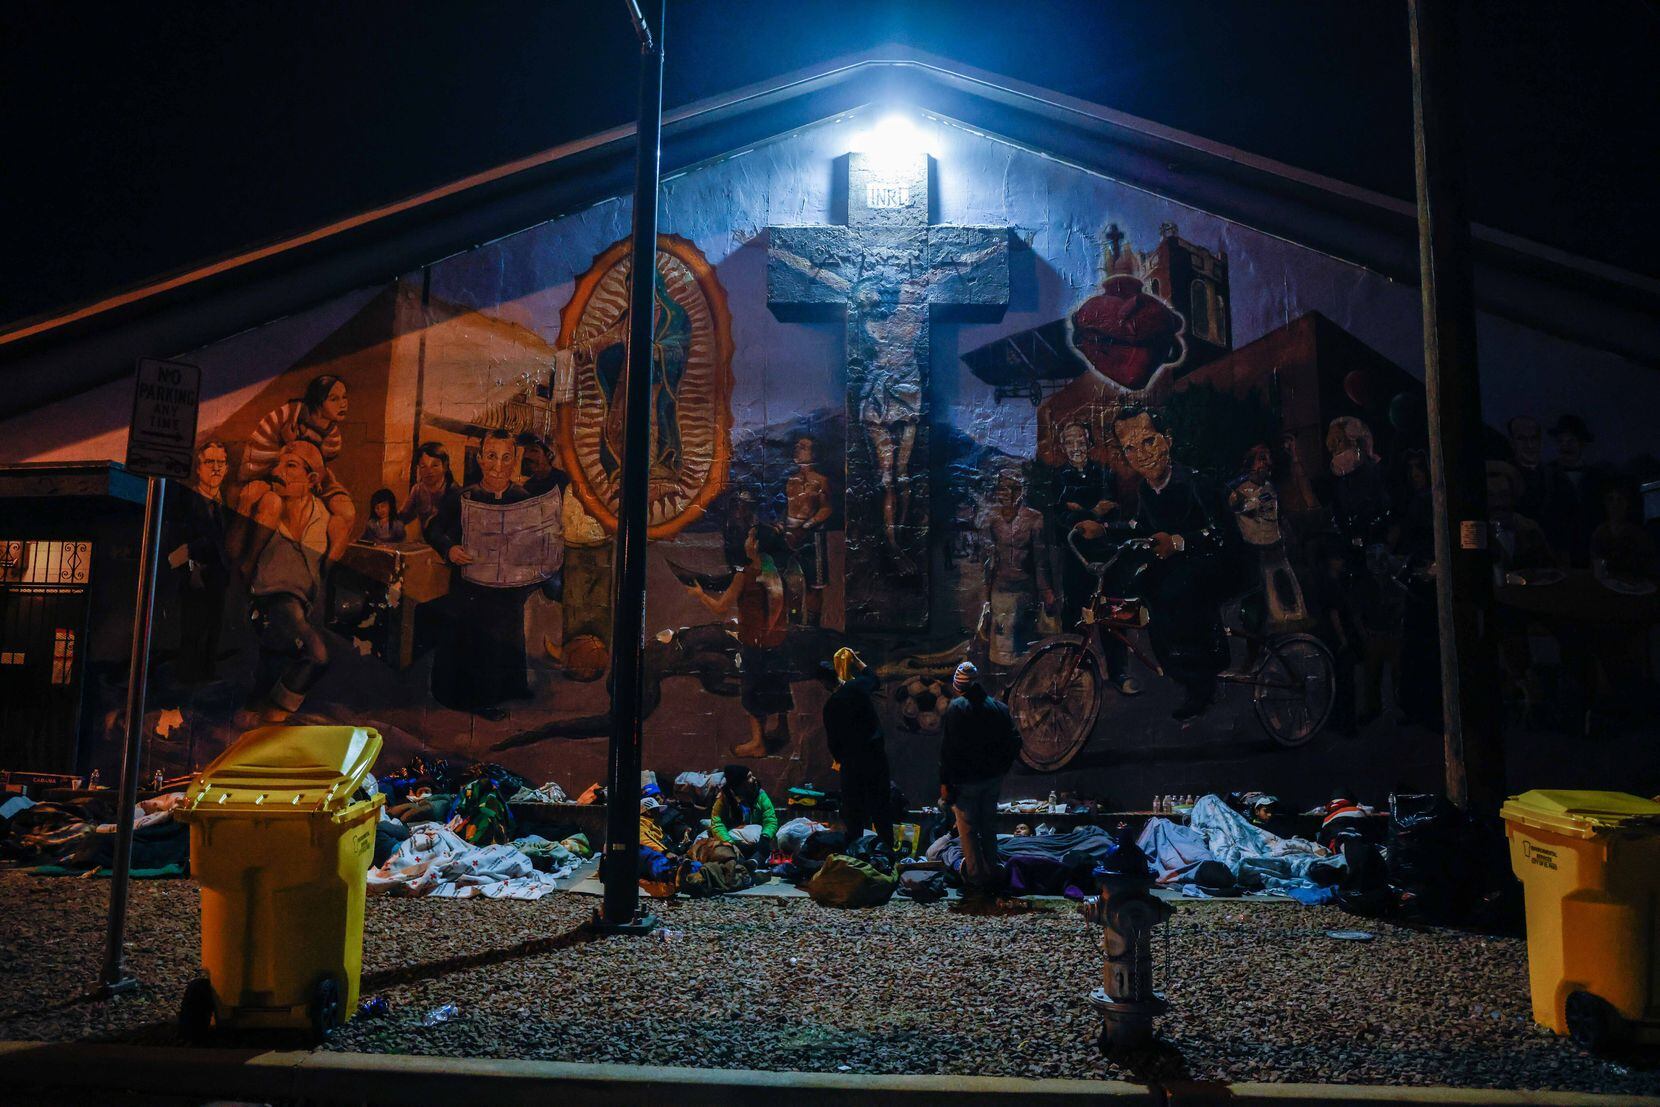 Migrants spend the night outside at the Centro Pastoral Sagrado Corazon in El Paso.